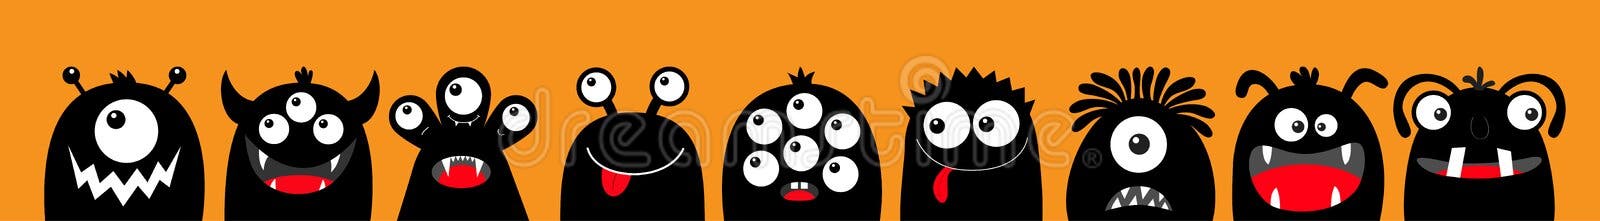 Conjunto De Rostos Assustadores E Engraçados Para Abóbora Ou Fantasma De  Halloween. Expressões Faciais De Jackolantern. Faces De H Ilustração do  Vetor - Ilustração de olhos, fantasma: 224078009